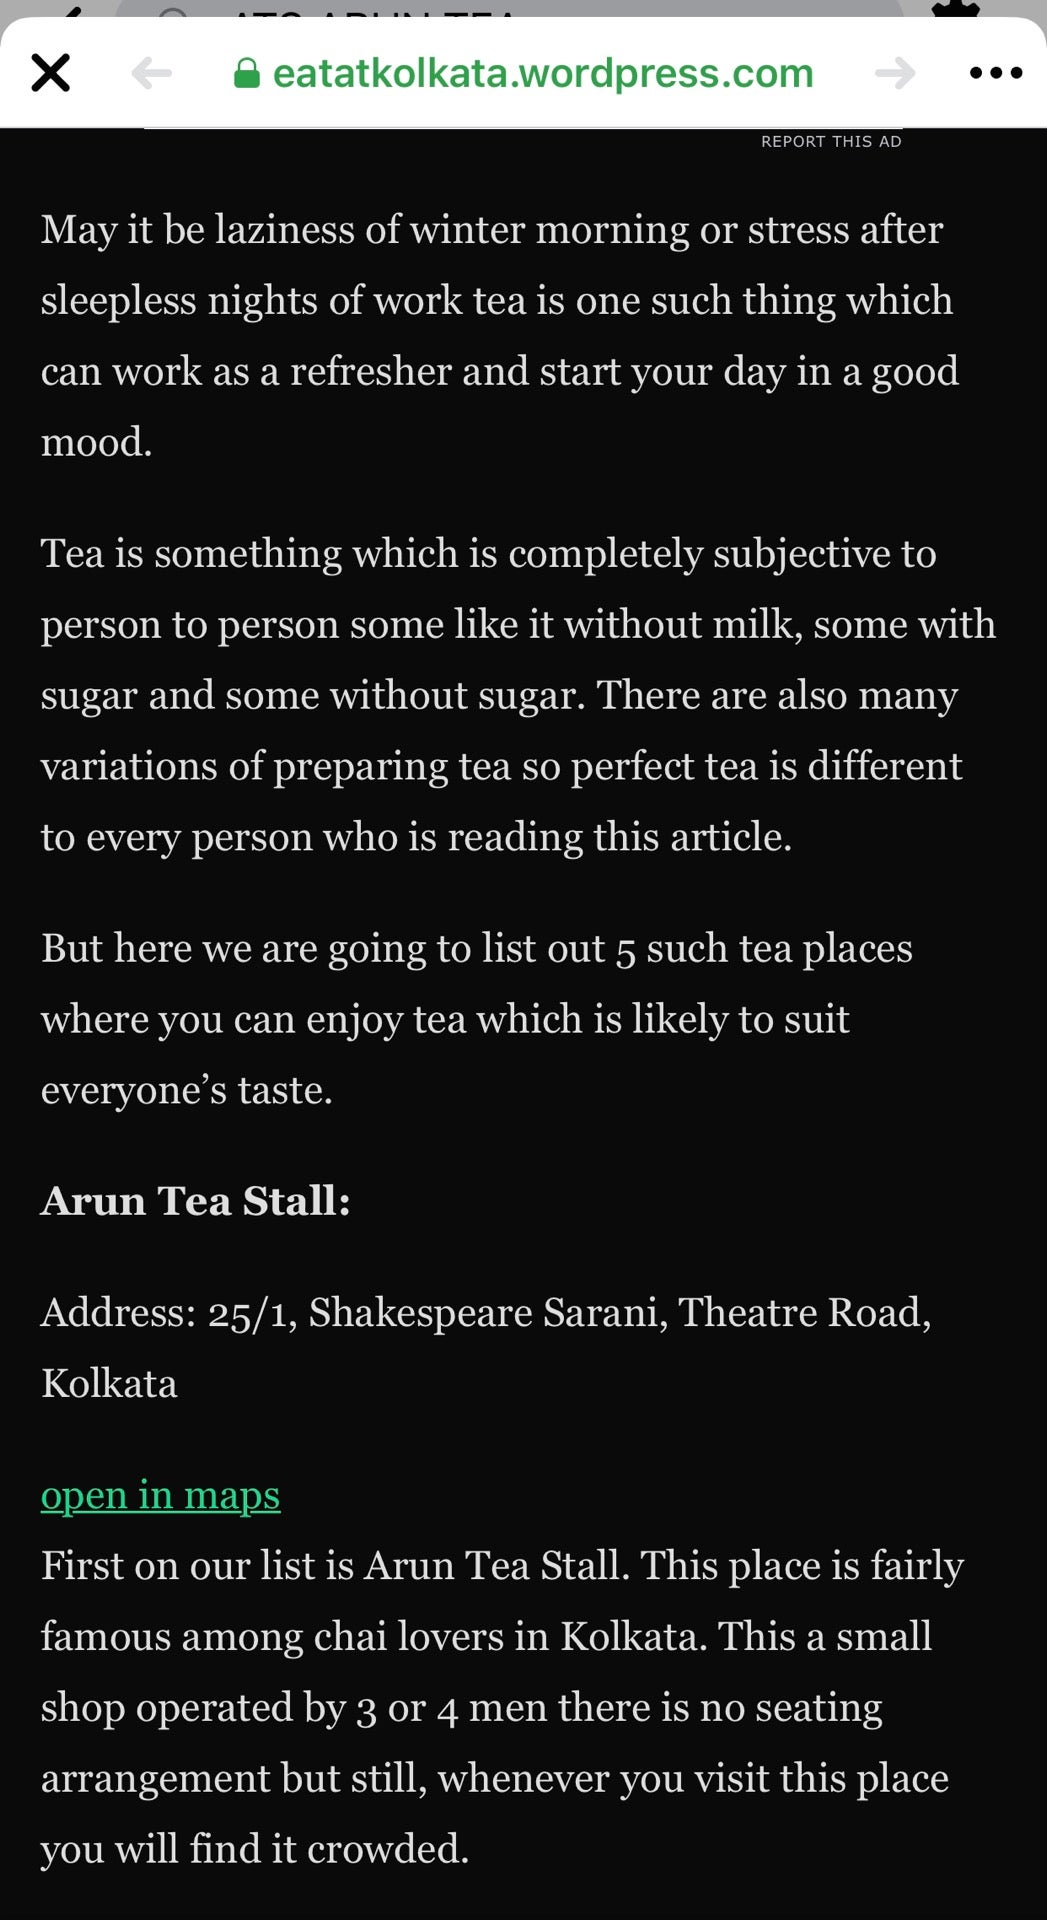 ATS Arun Tea Stall